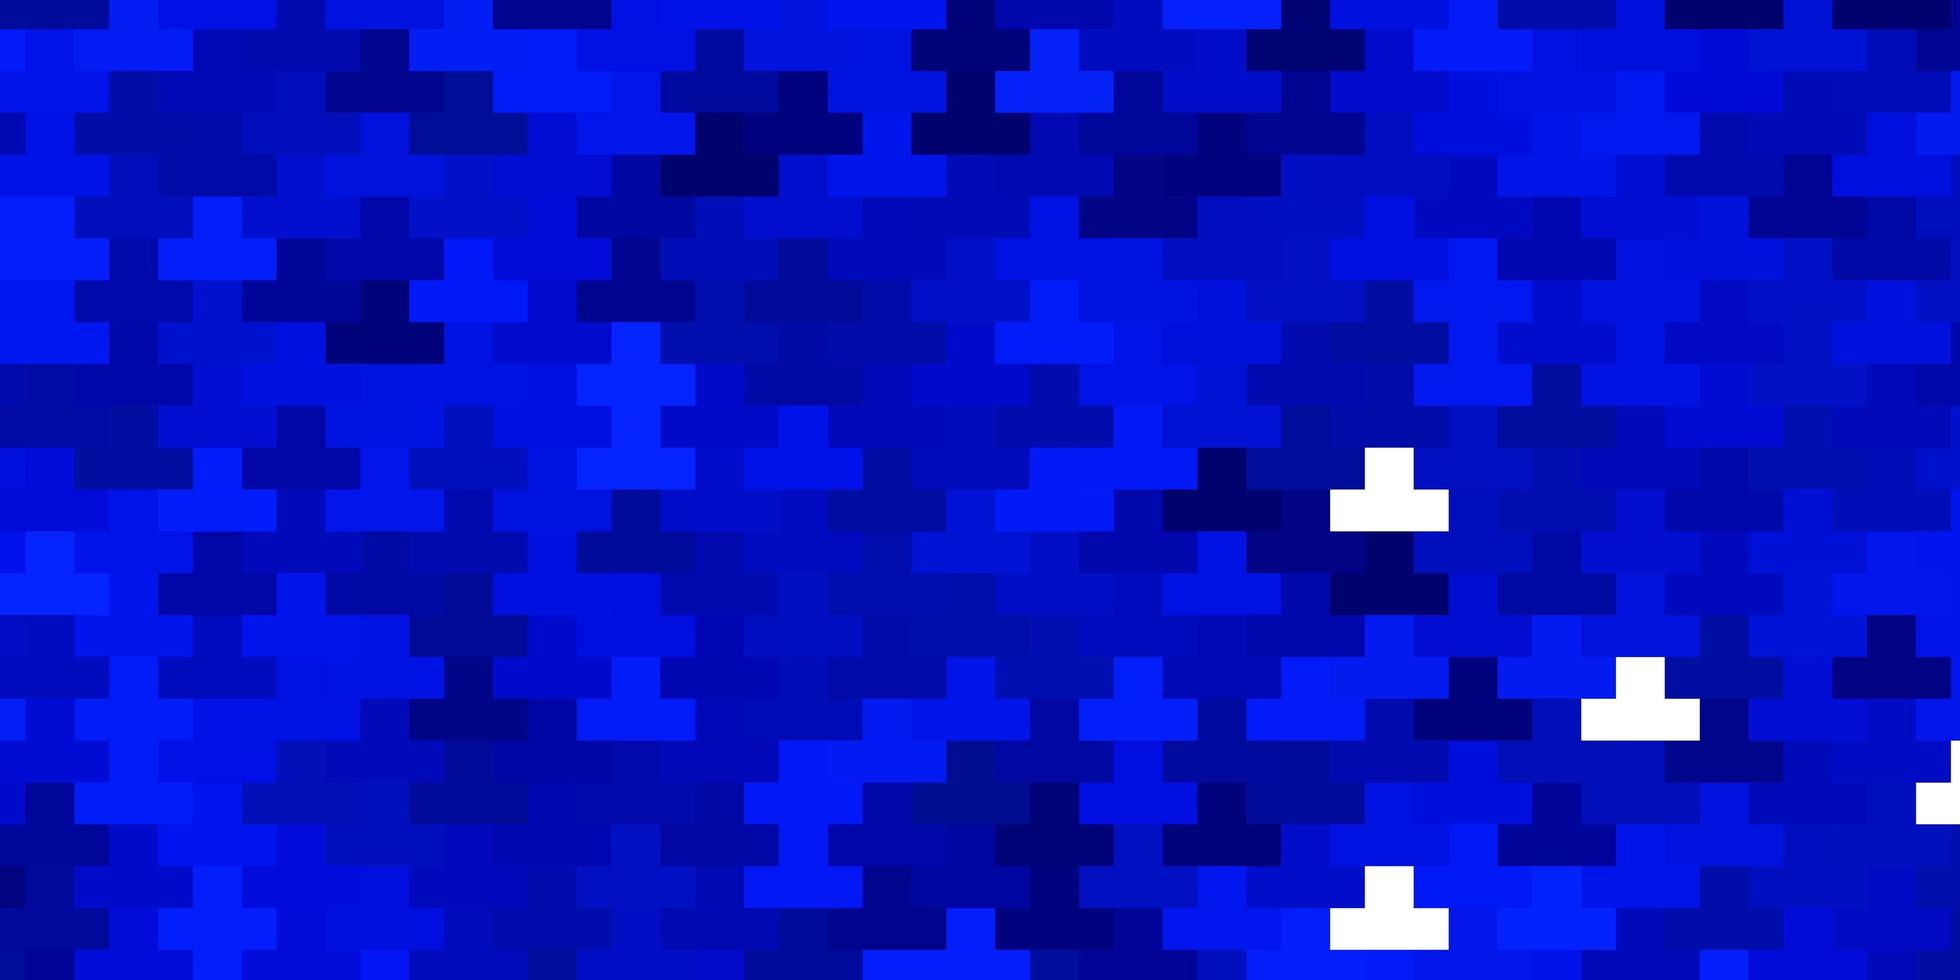 sfondo vettoriale blu scuro con rettangoli. illustrazione colorata con rettangoli sfumati e quadrati. modello moderno per la tua pagina di destinazione.